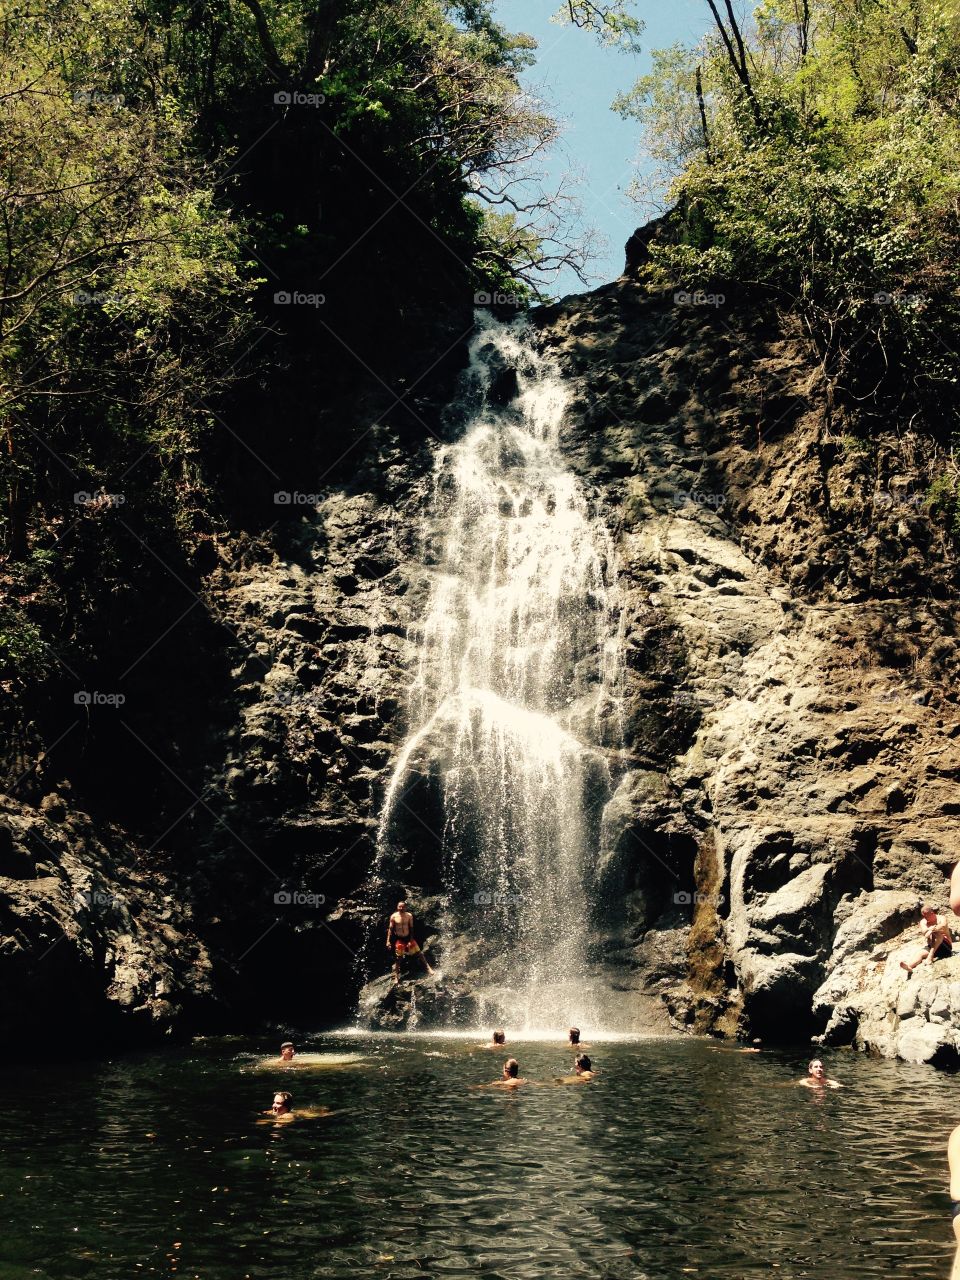 Montezuma waterfall. Montezuma, Costa Rica